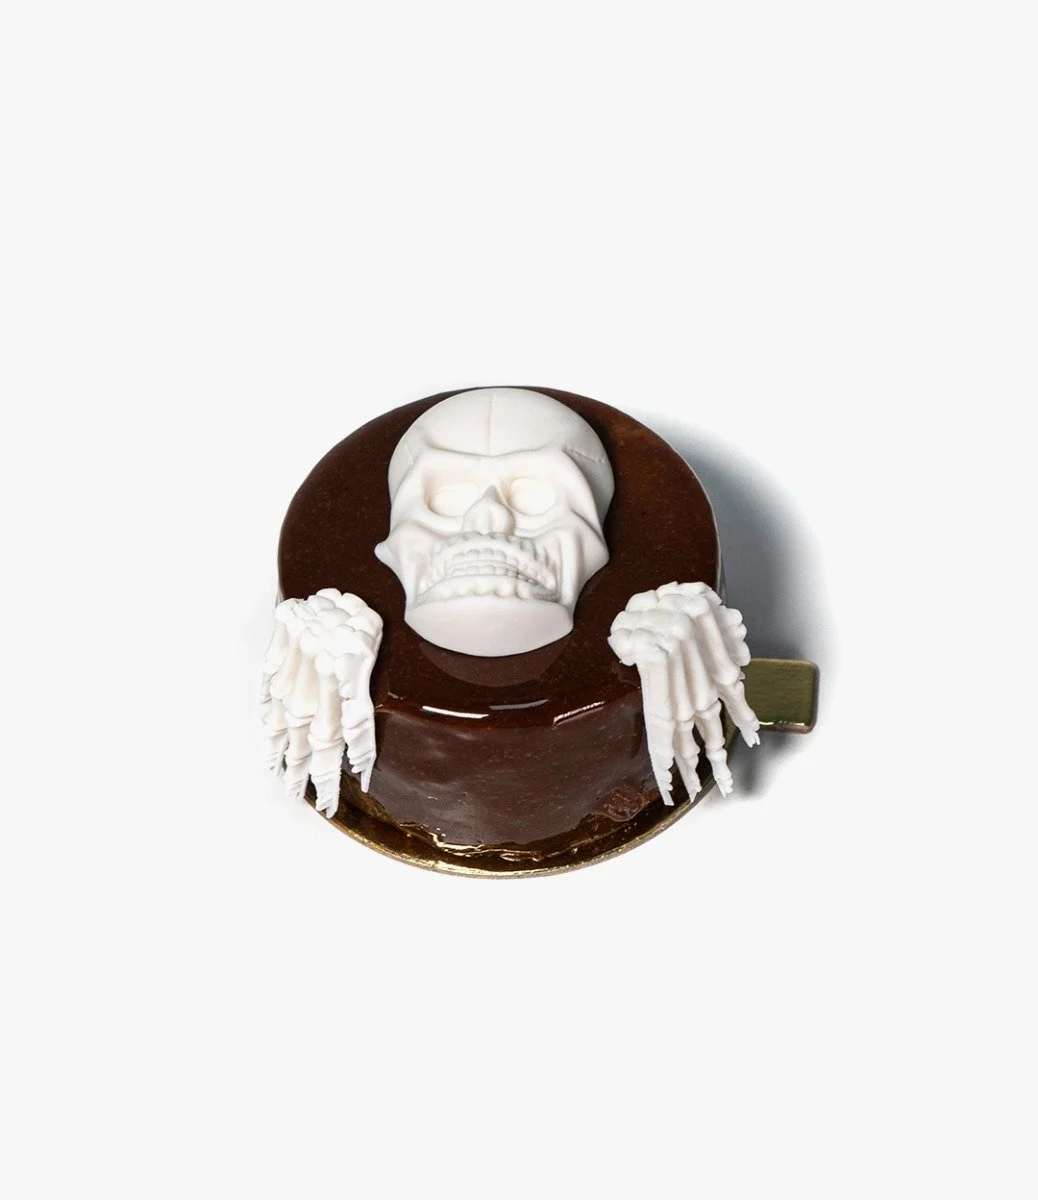 Oreo Skeleton Cake by Yamanote Atelier